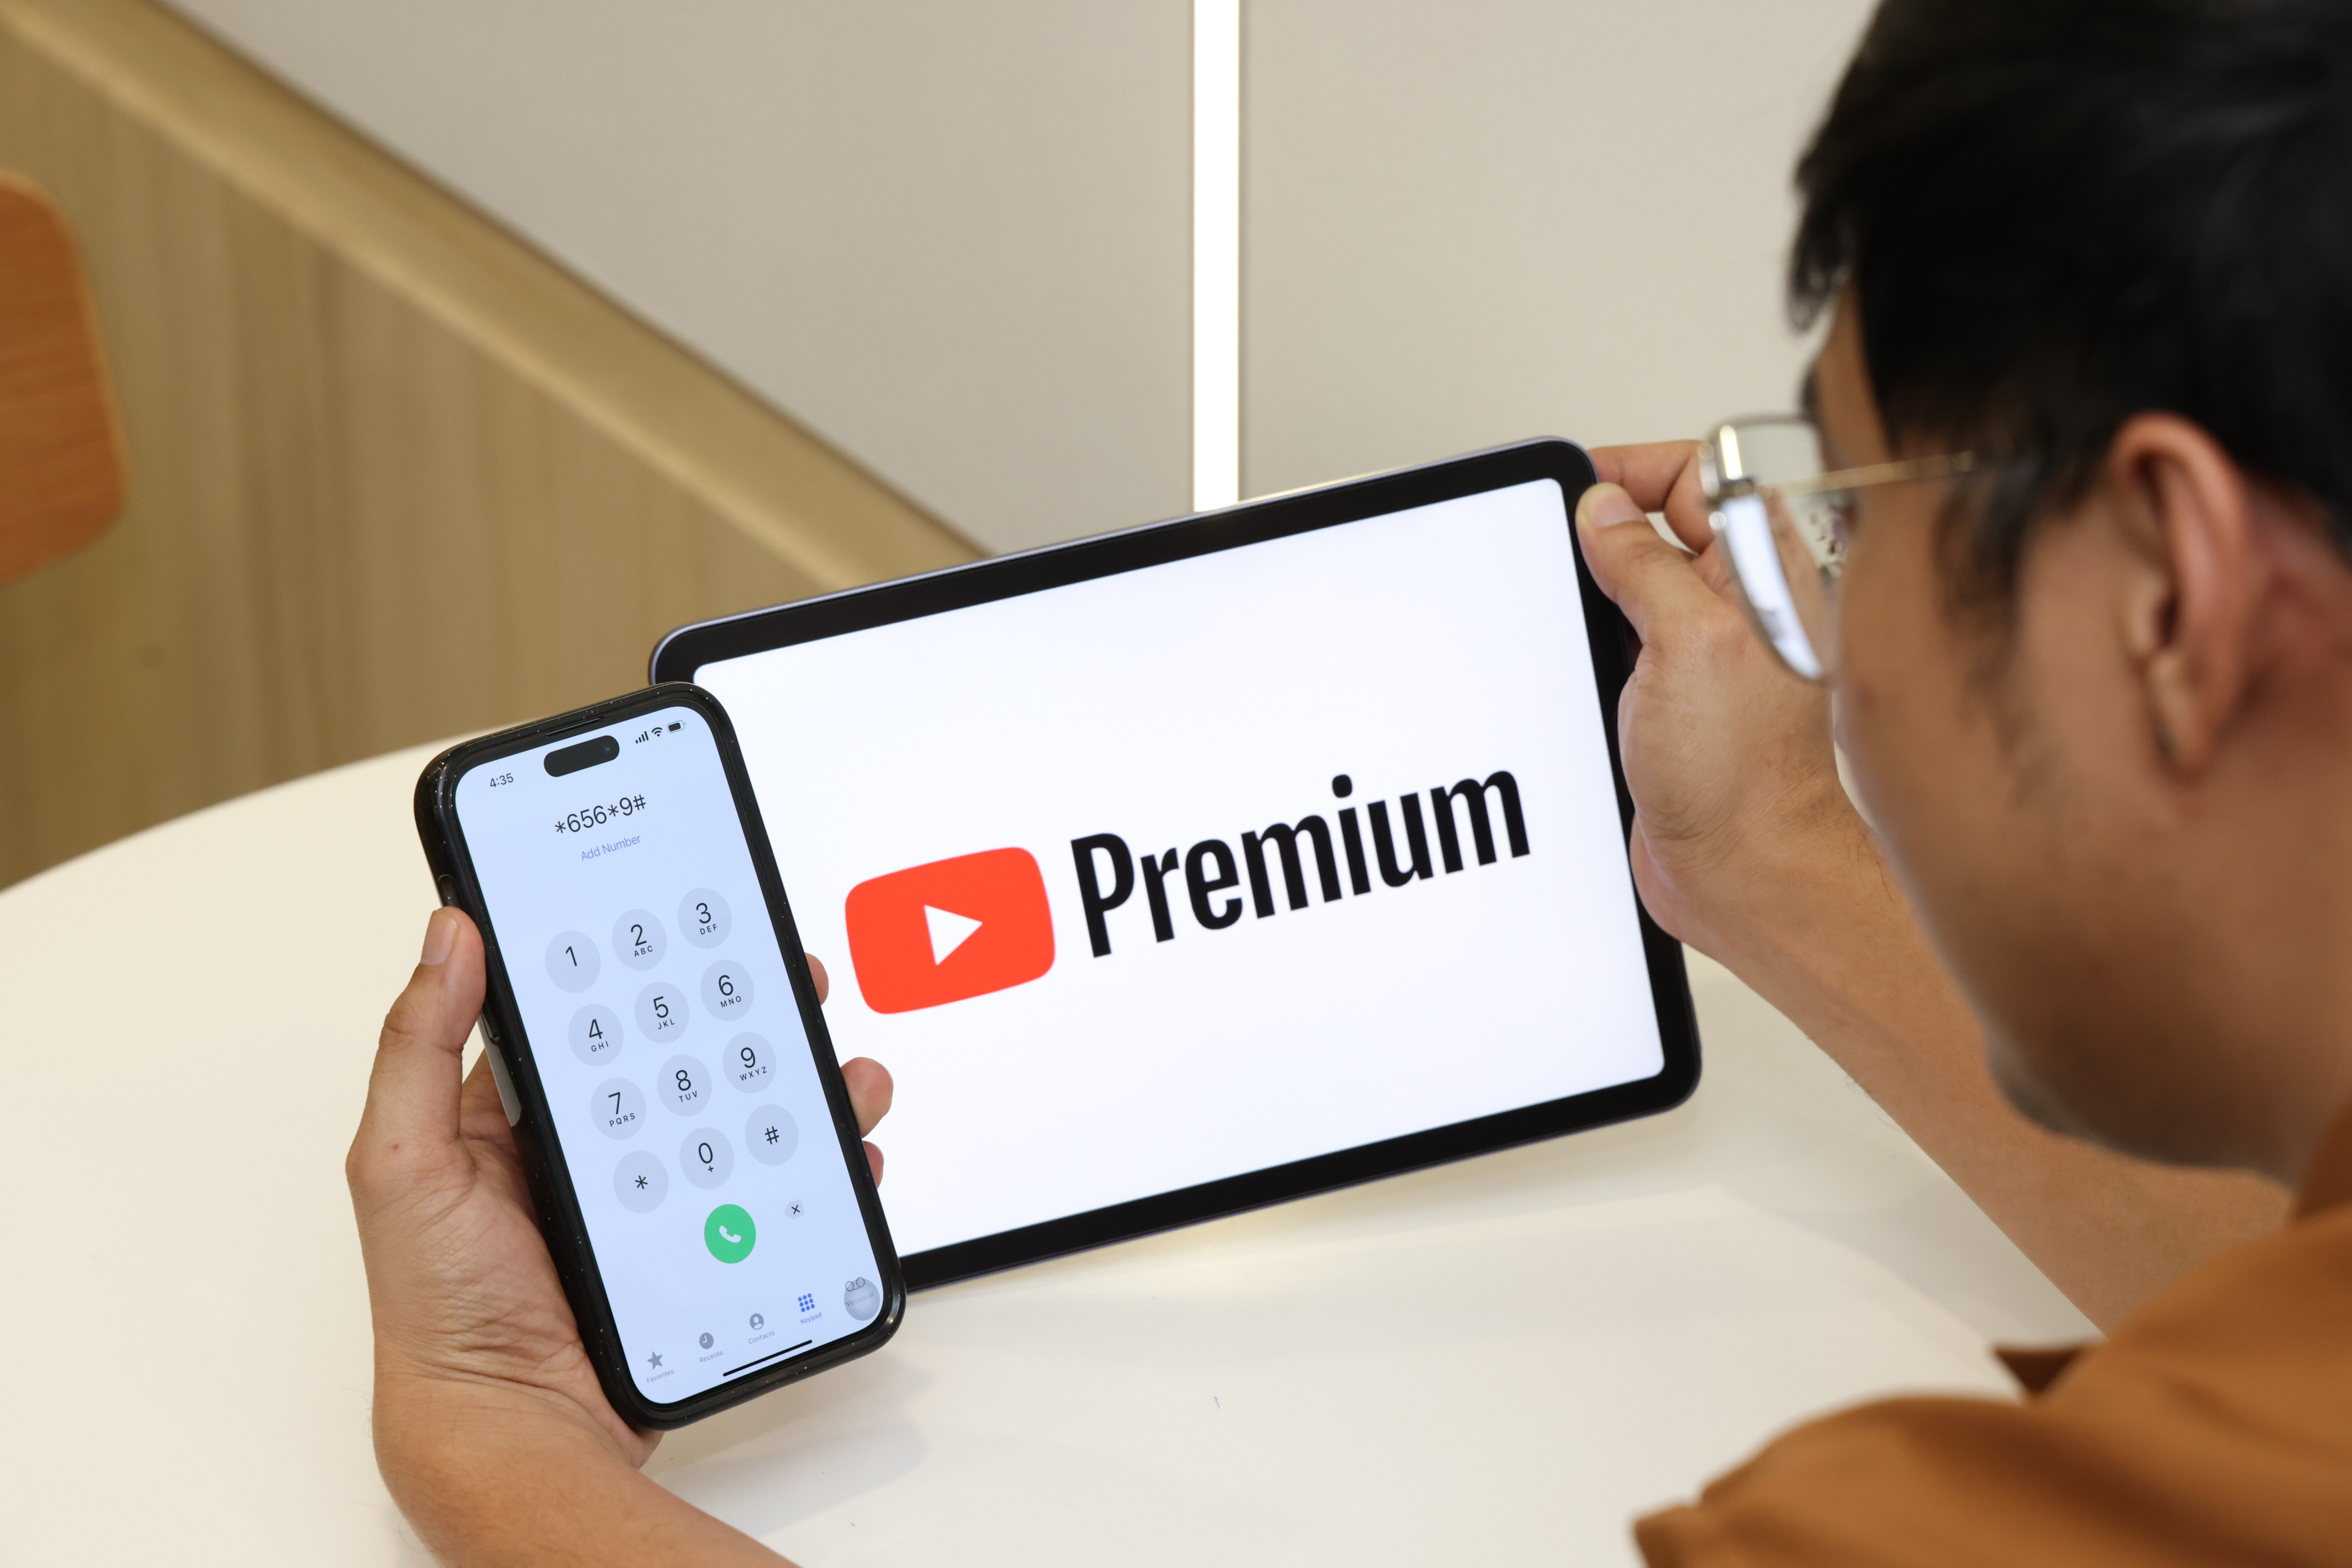 AIS เปิดประสบการณ์การรับชมคอนเทนต์ความบันเทิง YouTube แบบไม่มีโฆษณาคั่นพร้อมจัดเต็มความพิเศษ YouTube Premium สำหรับลูกค้าเท่านั้น